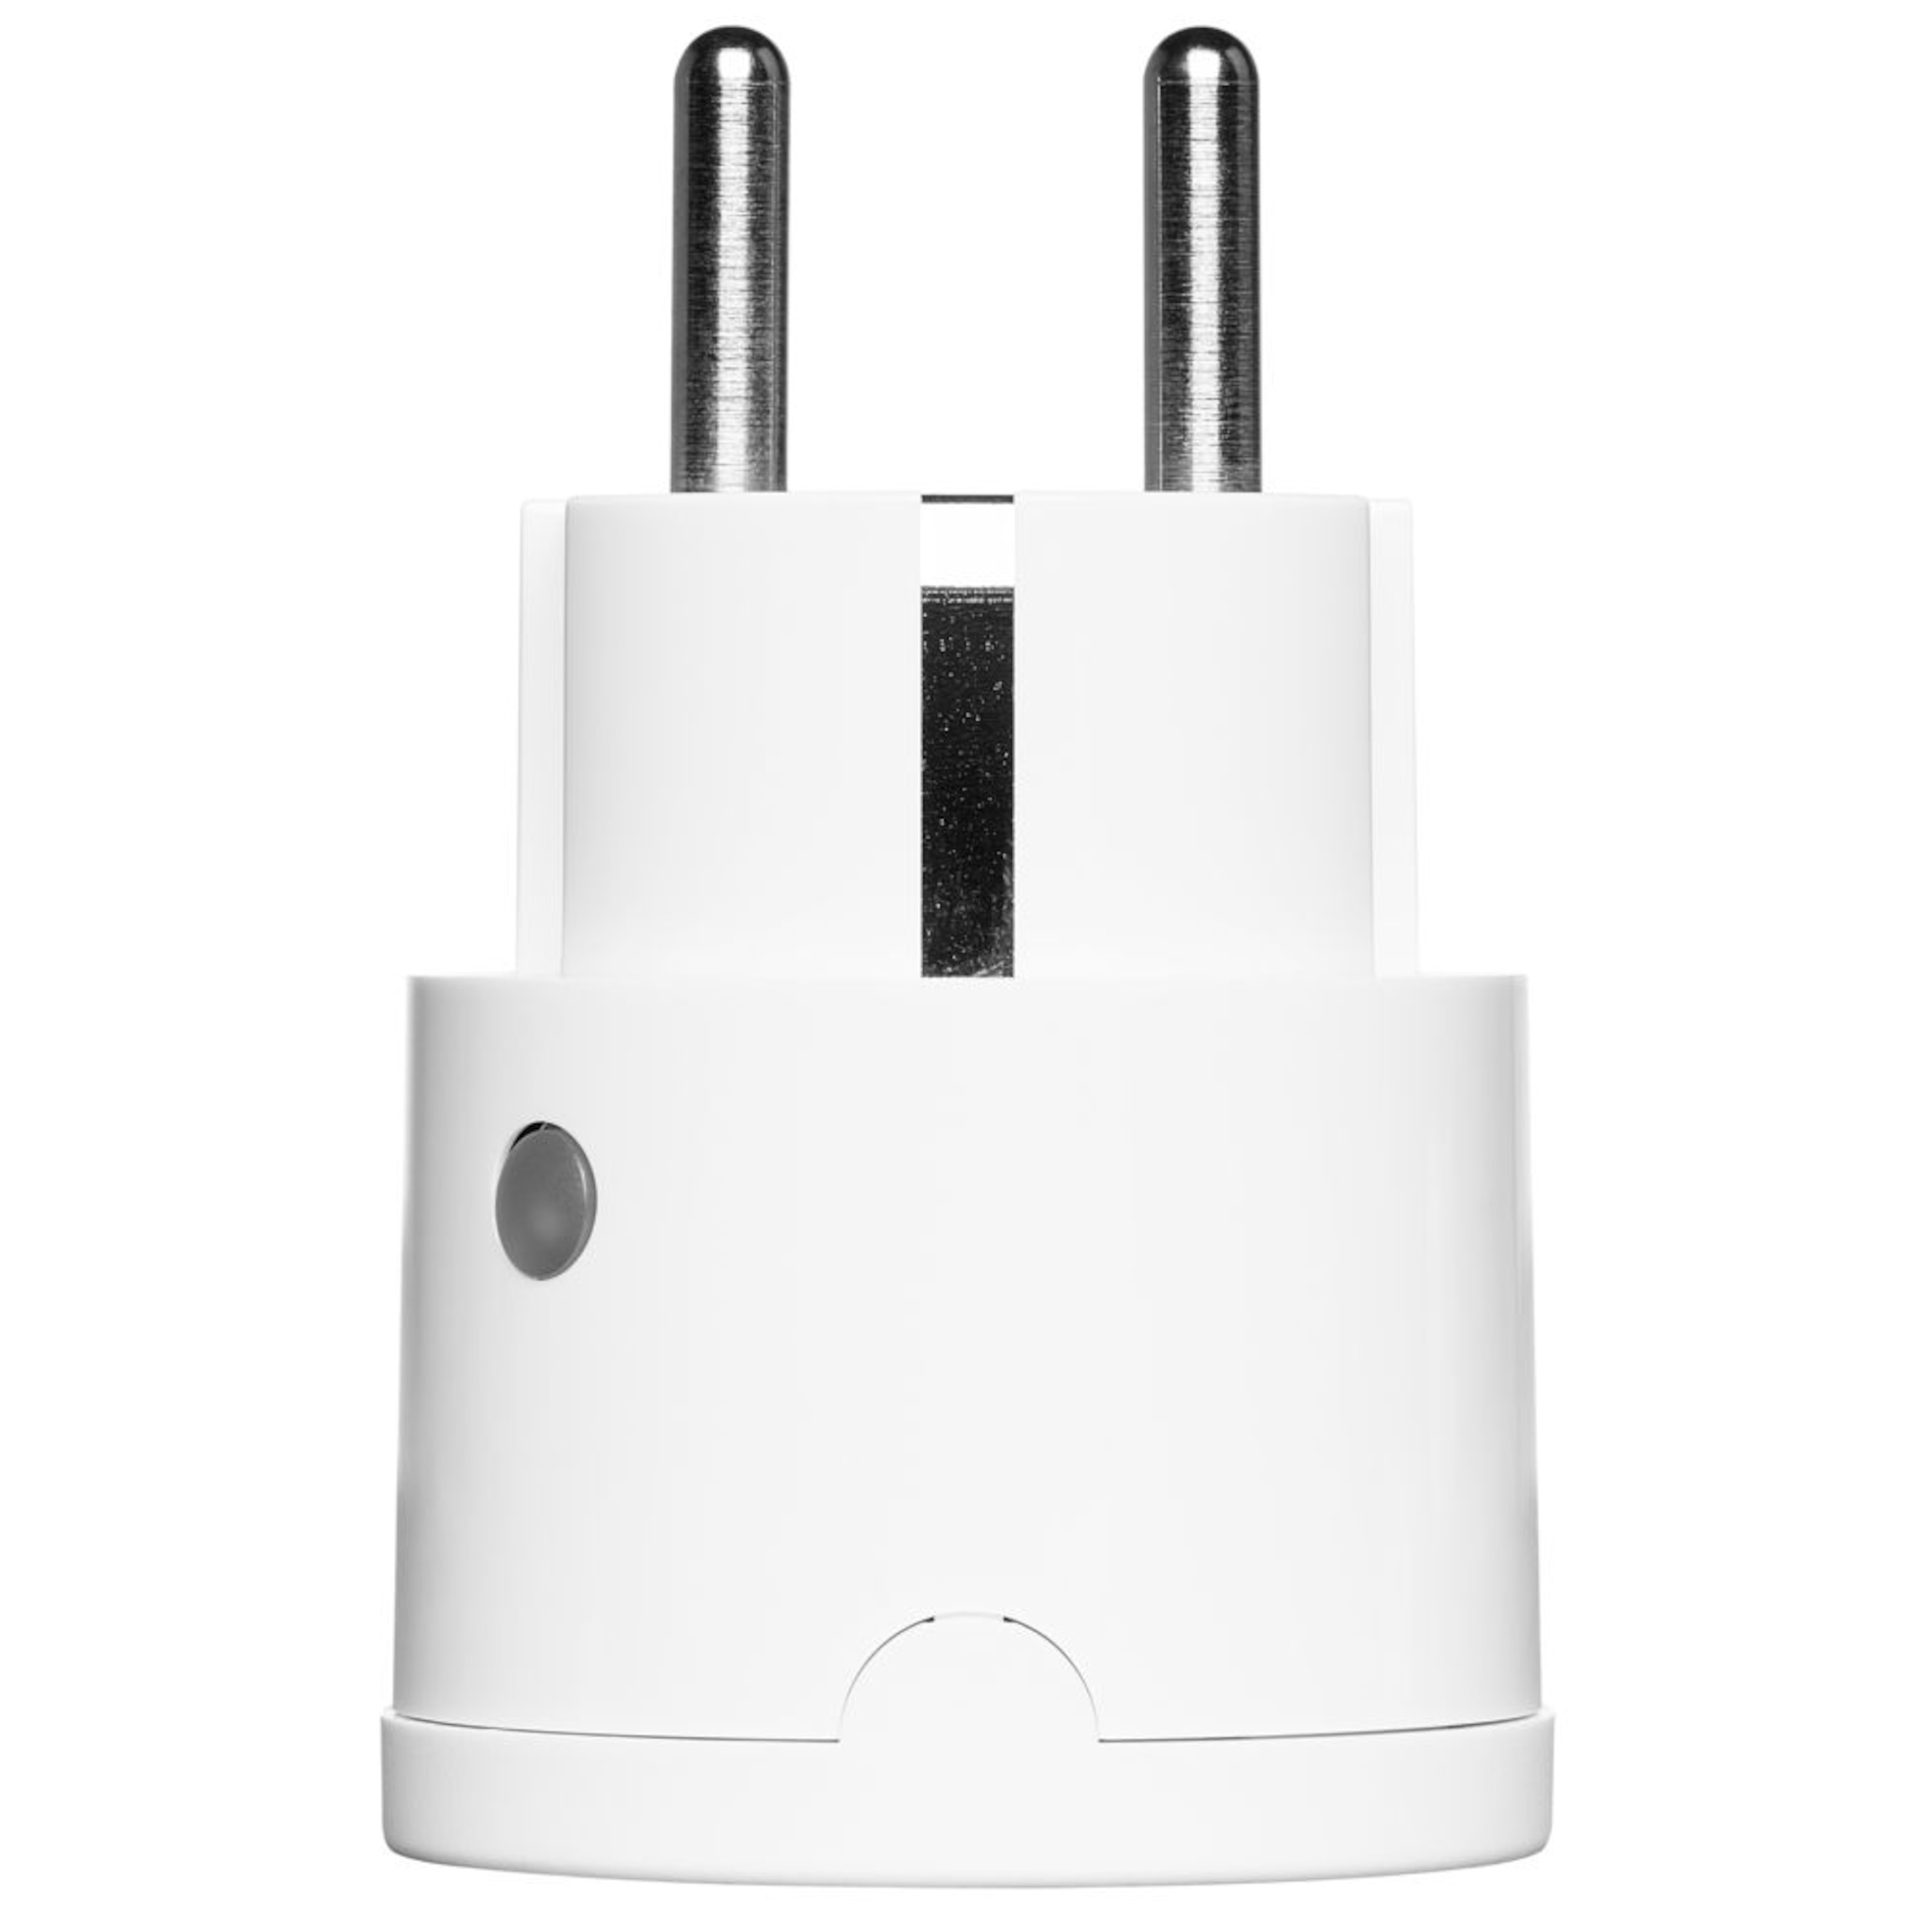 MEDION® Smart Home Sparpaket - 2 x Zwischenstecker P85702, schaltet elektrische Geräte, misst Stromverbrauch, Zeitschaltung oder manuelle Schaltung